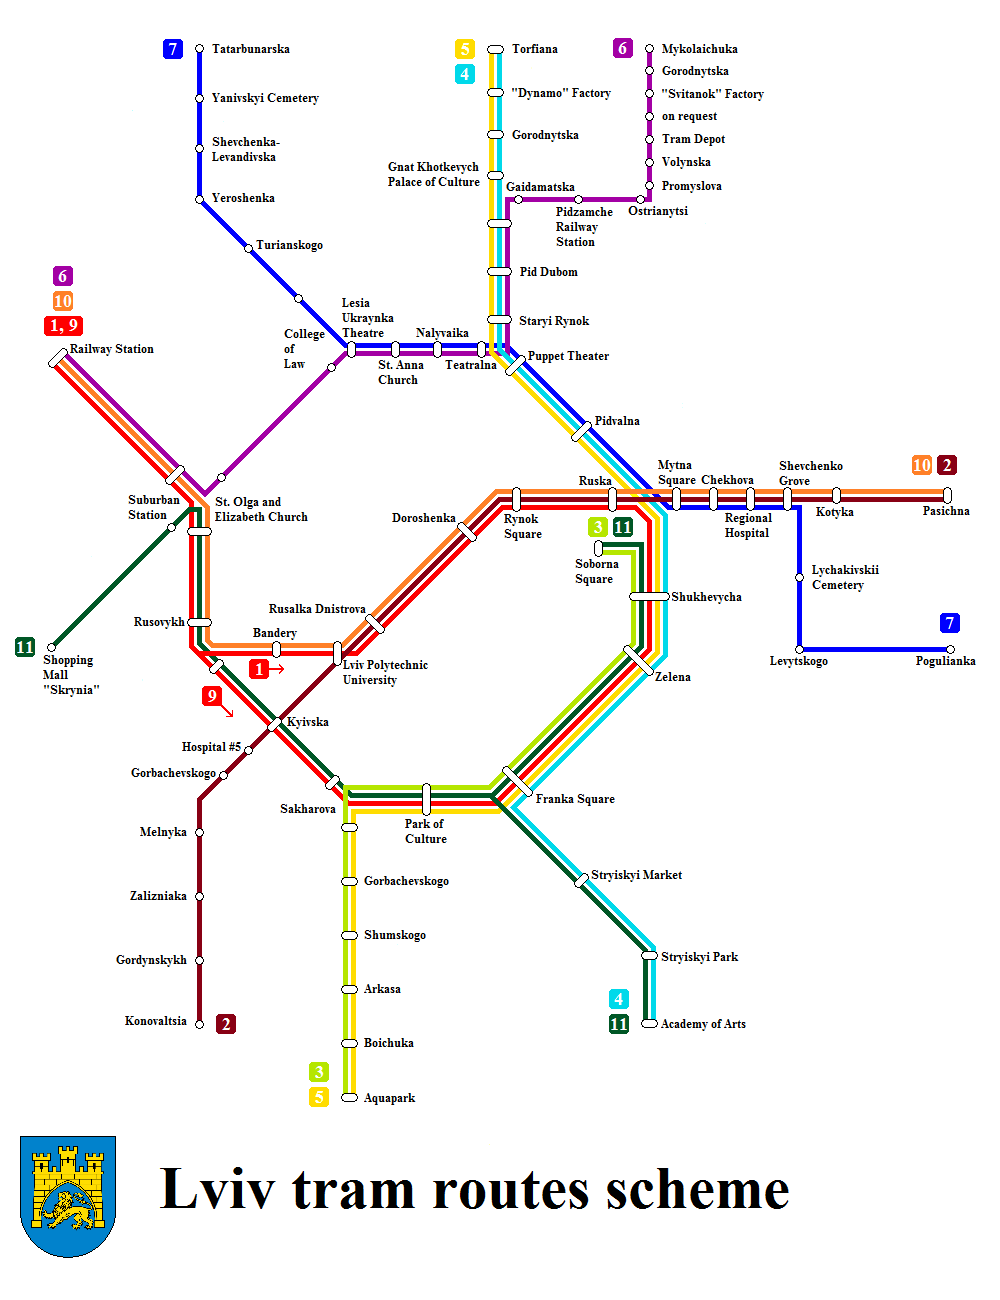 lviv_tram_routes_map_en.png